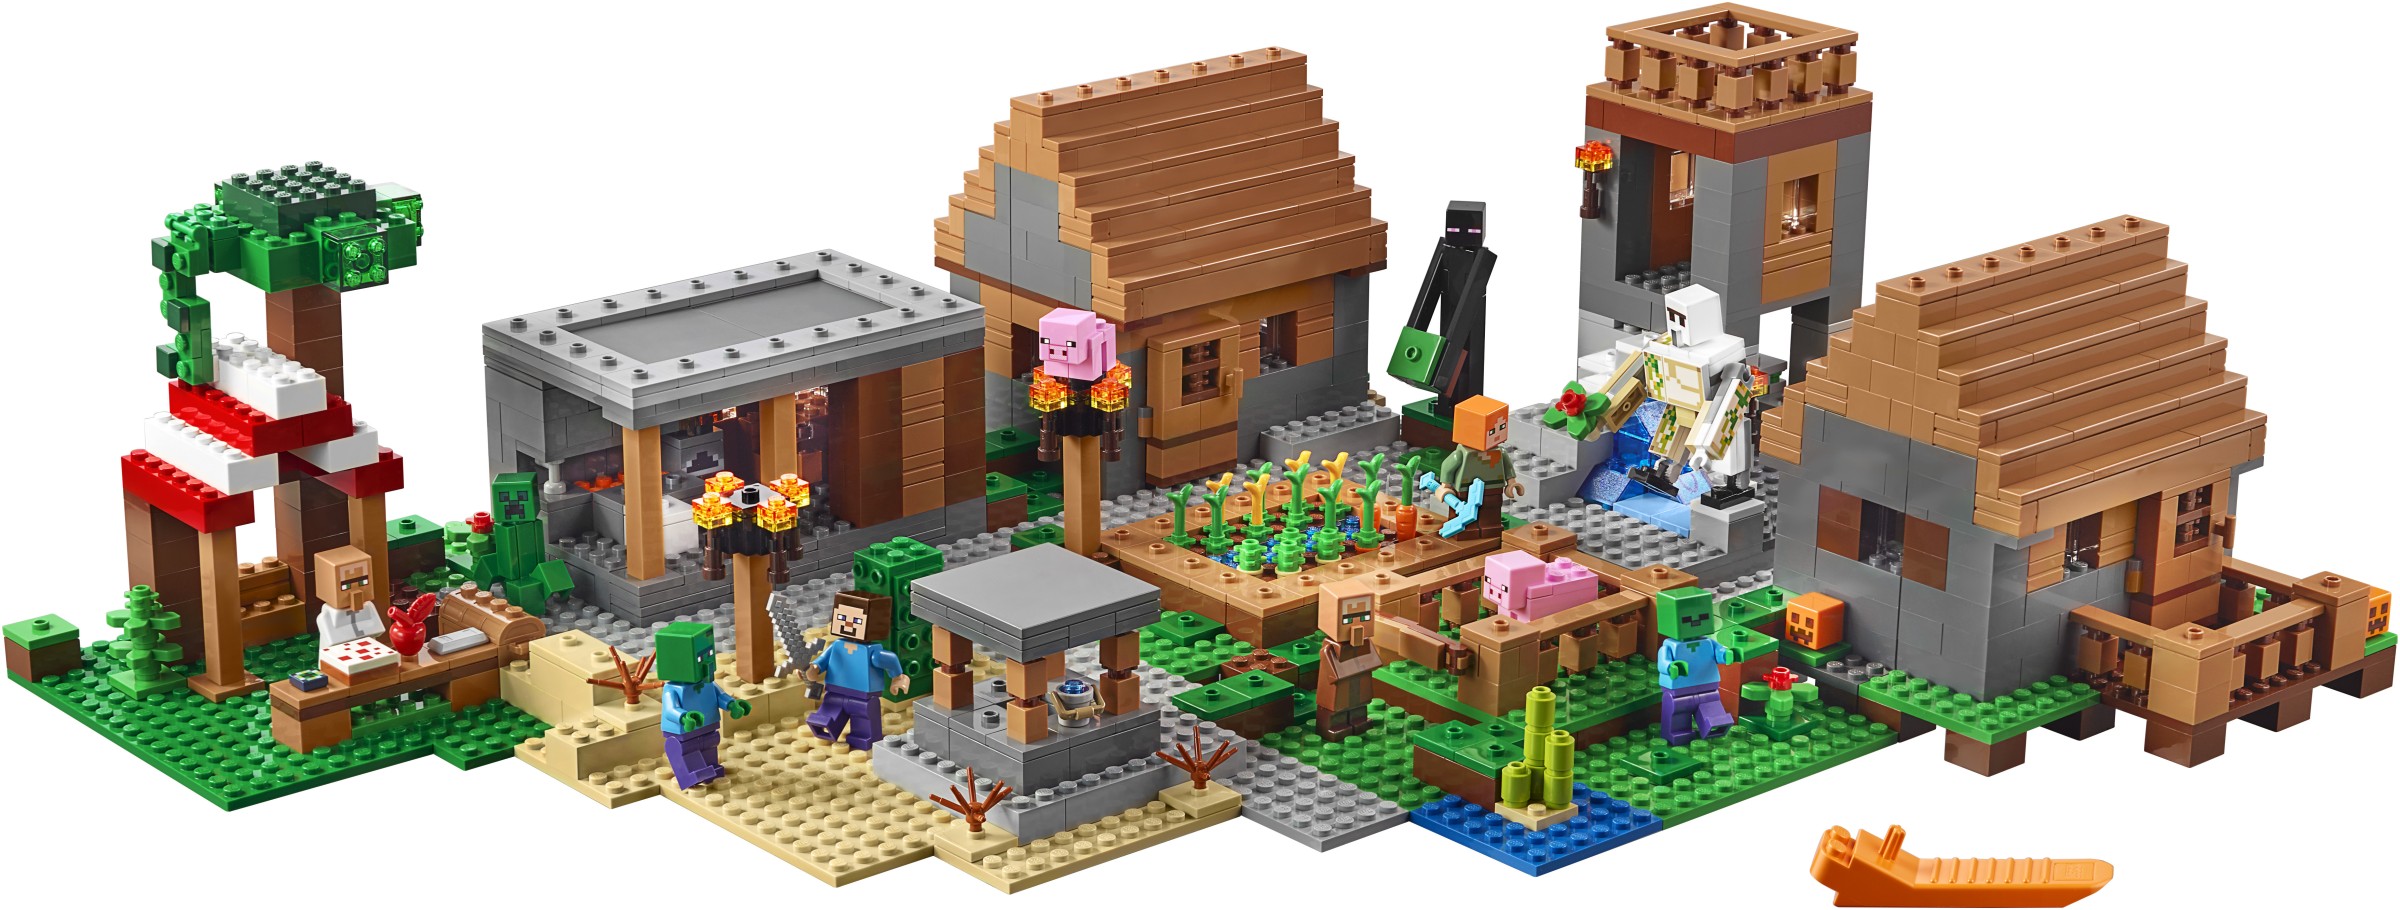 LEGO Minecraft 2016 Brickset